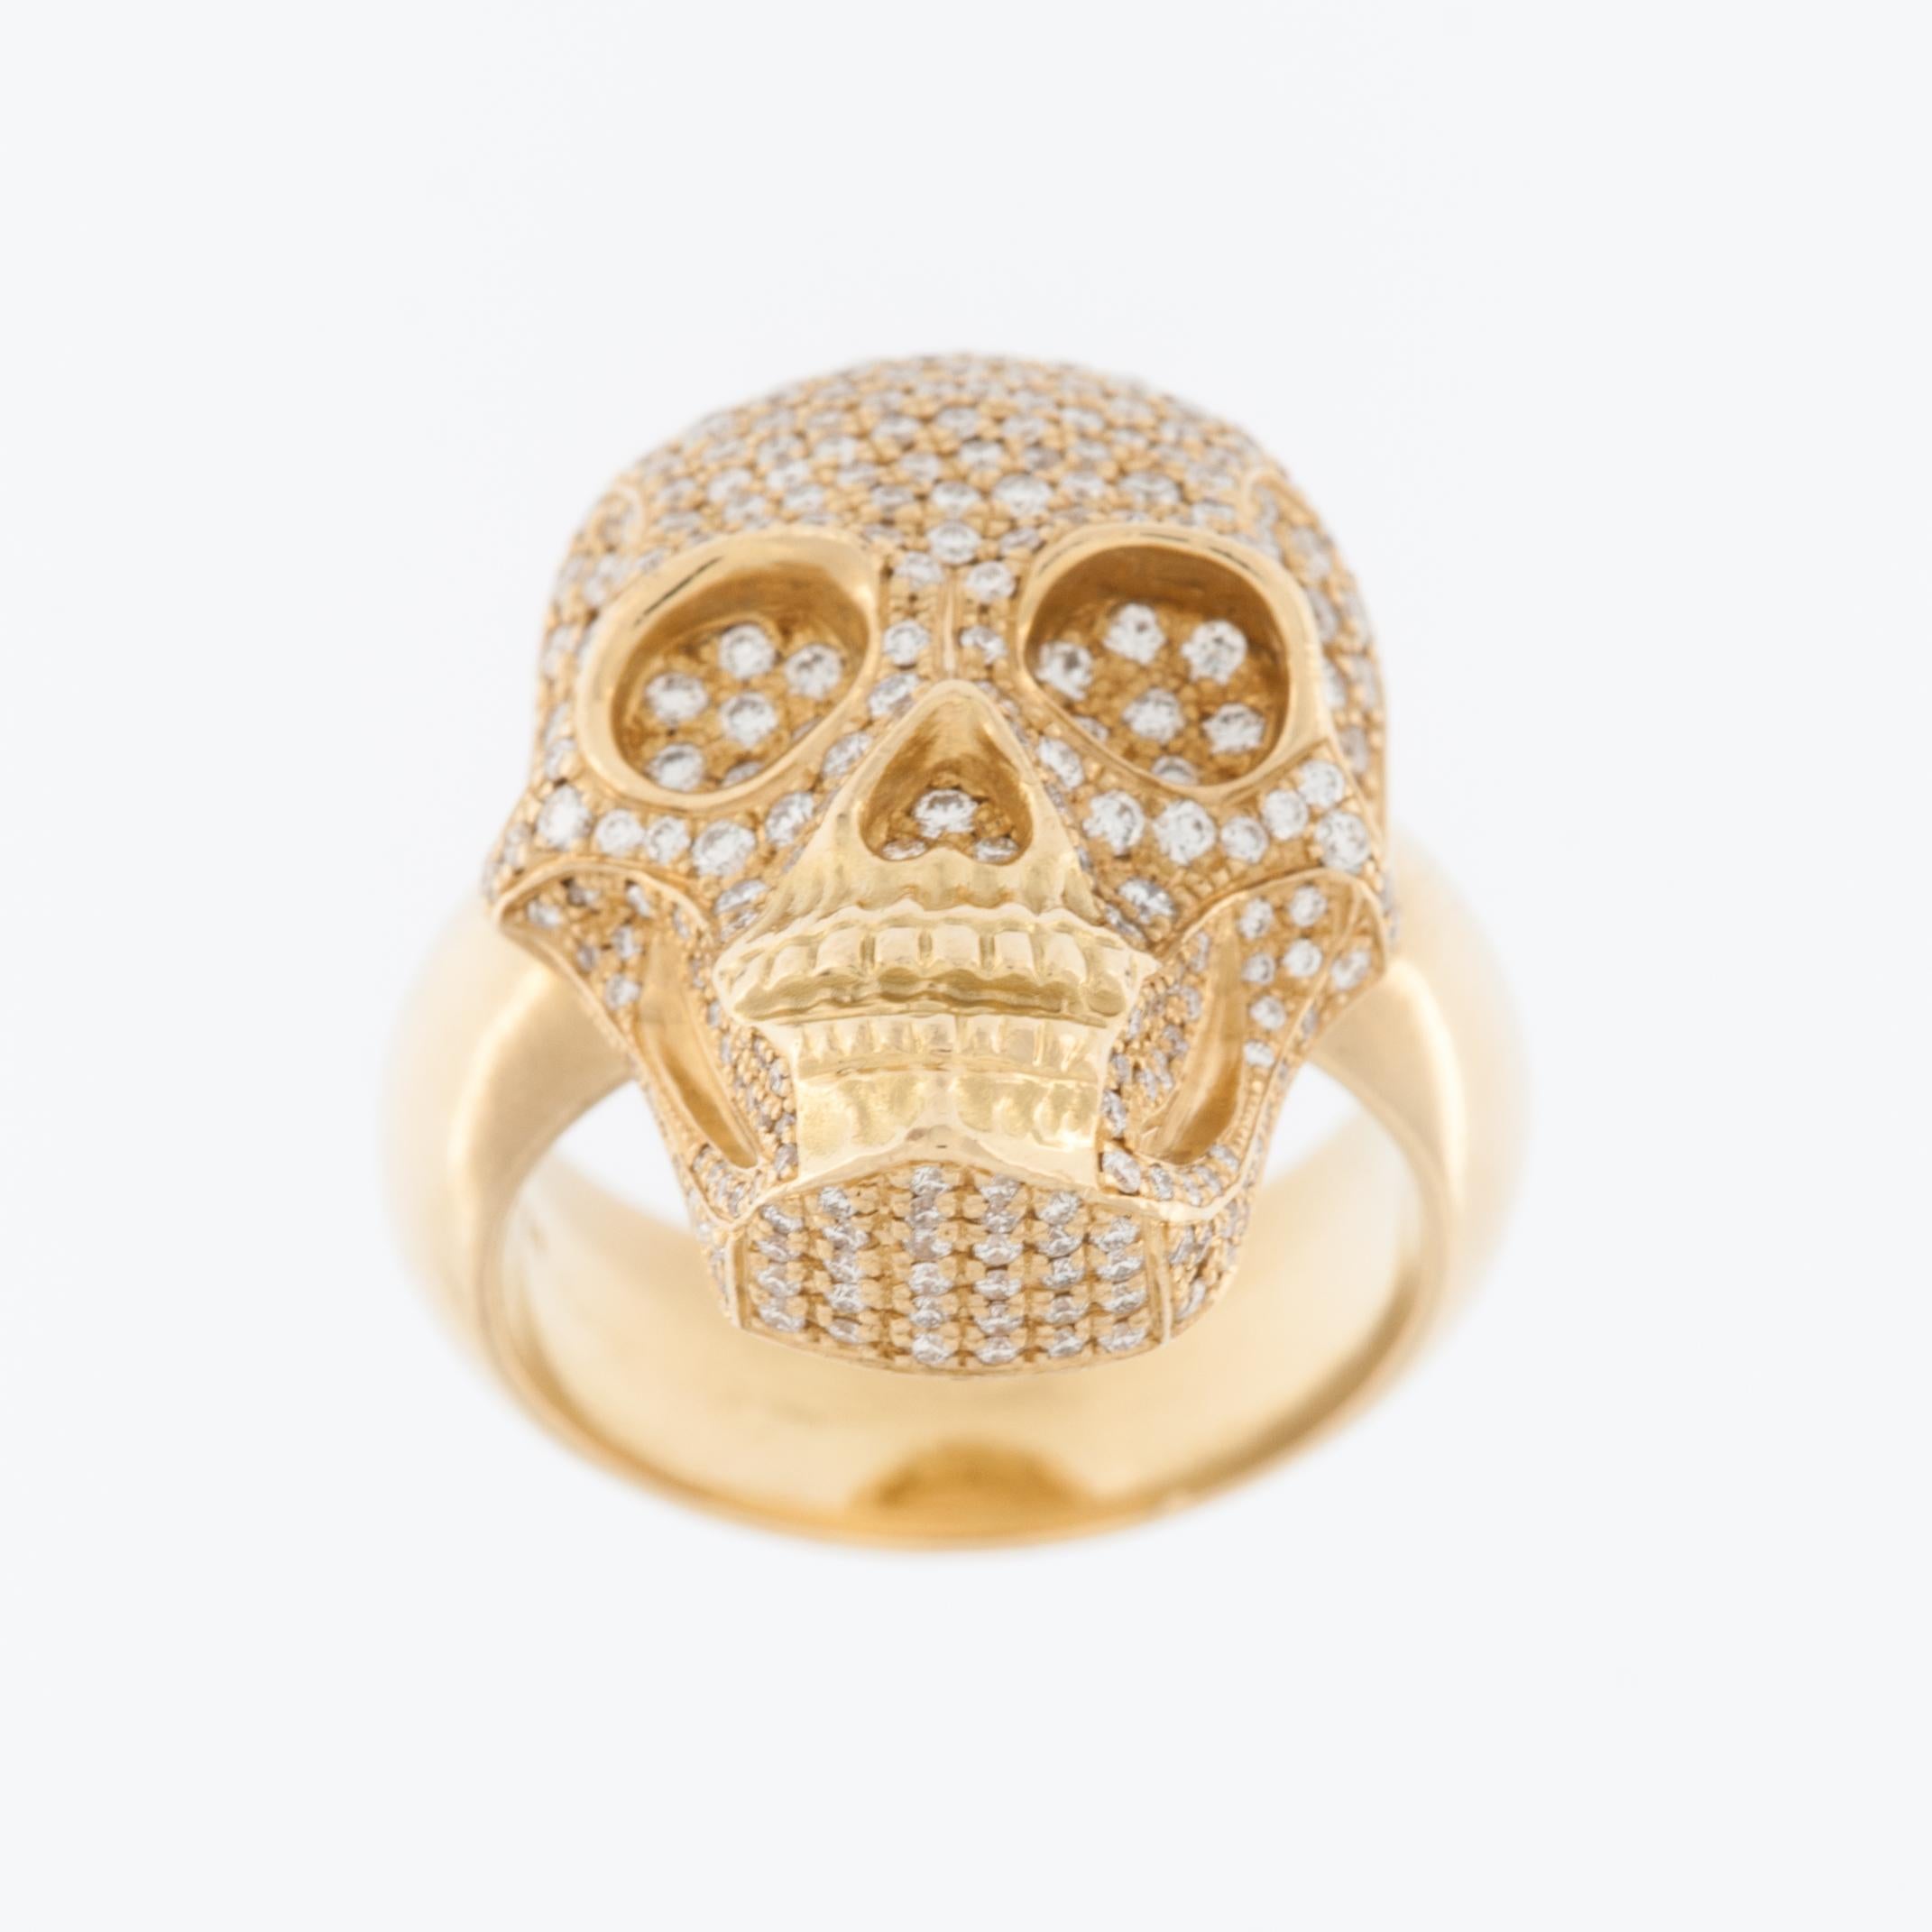 La bague Skull Design/One en or jaune 18kt avec diamants est un bijou unique et saisissant qui allie le luxe à une esthétique avant-gardiste. La bague est fabriquée en or jaune 18 carats de haute qualité, ce qui lui confère une grande durabilité et